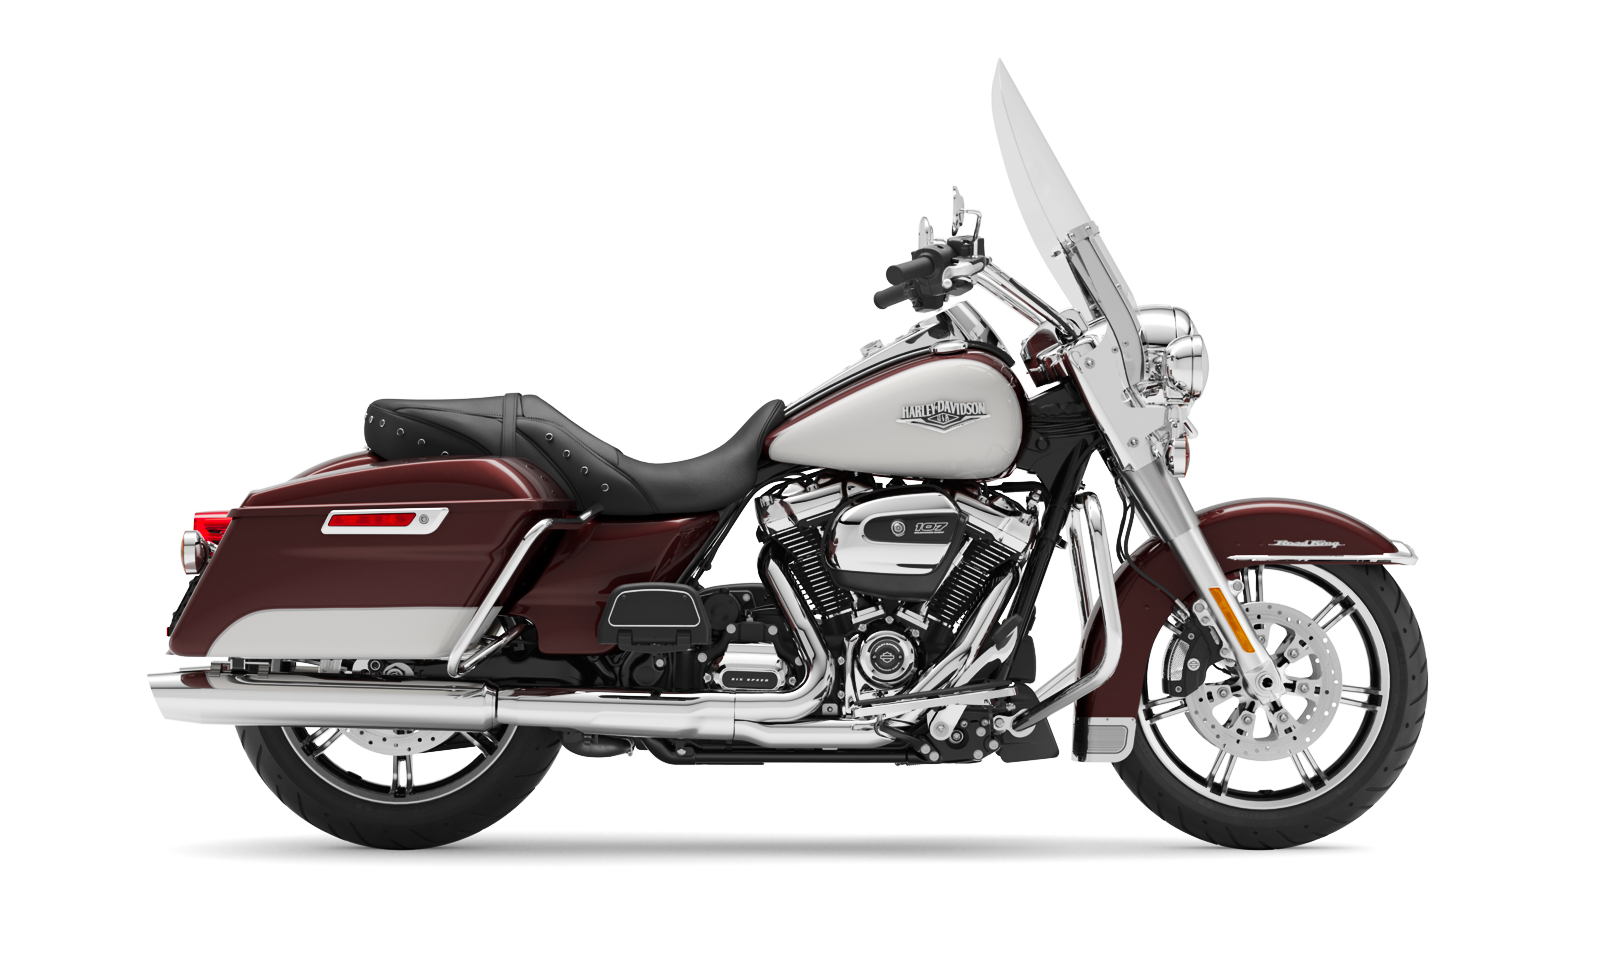 2007 Harley Davidson Road King Custom For Sale Promotion Off56